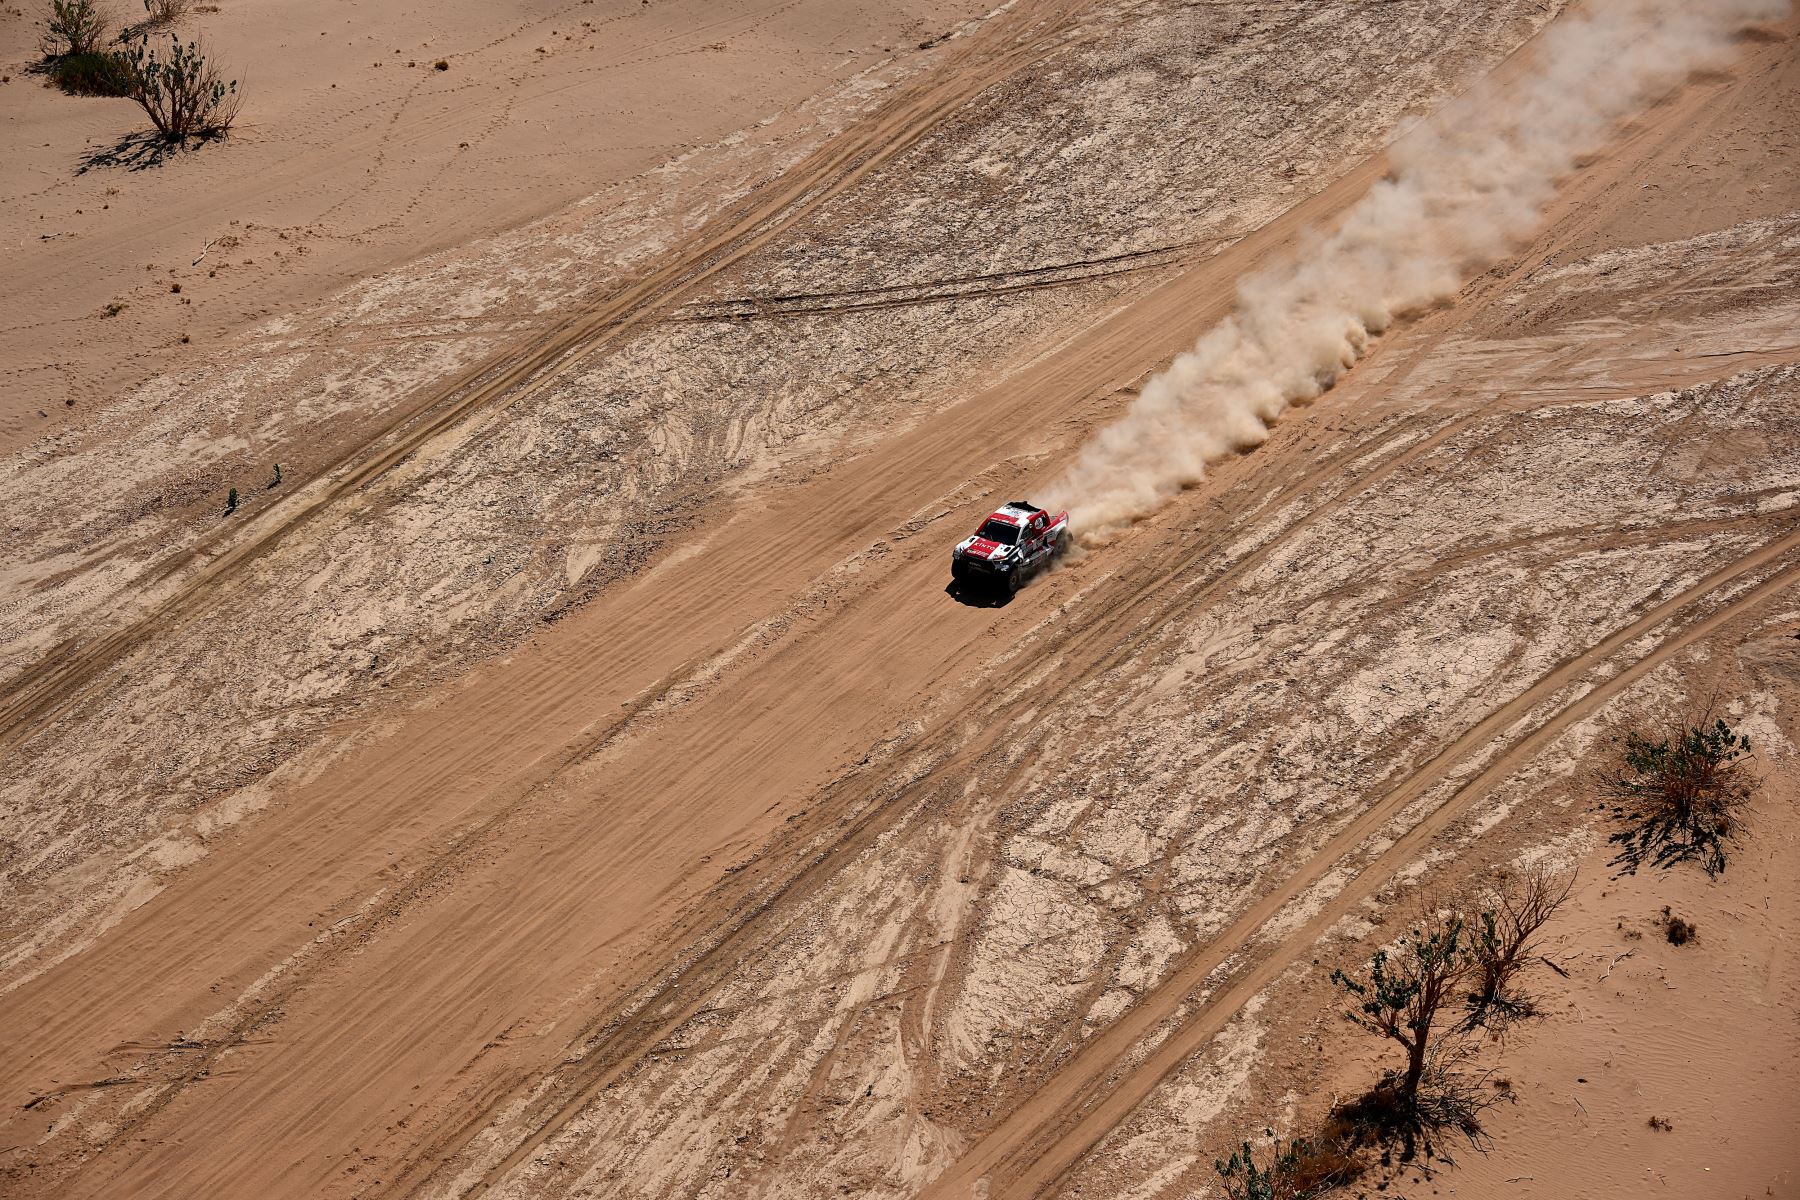 El piloto de Toyota Giniel De Villiers de Sudáfrica y su copiloto Dennis Murphy de Sudáfrica compiten durante la Etapa 10 del Rally Dakar 2022 entre Wadi Ad Dawasir y Bisha en Arabia Saudita.
Foto: AFP